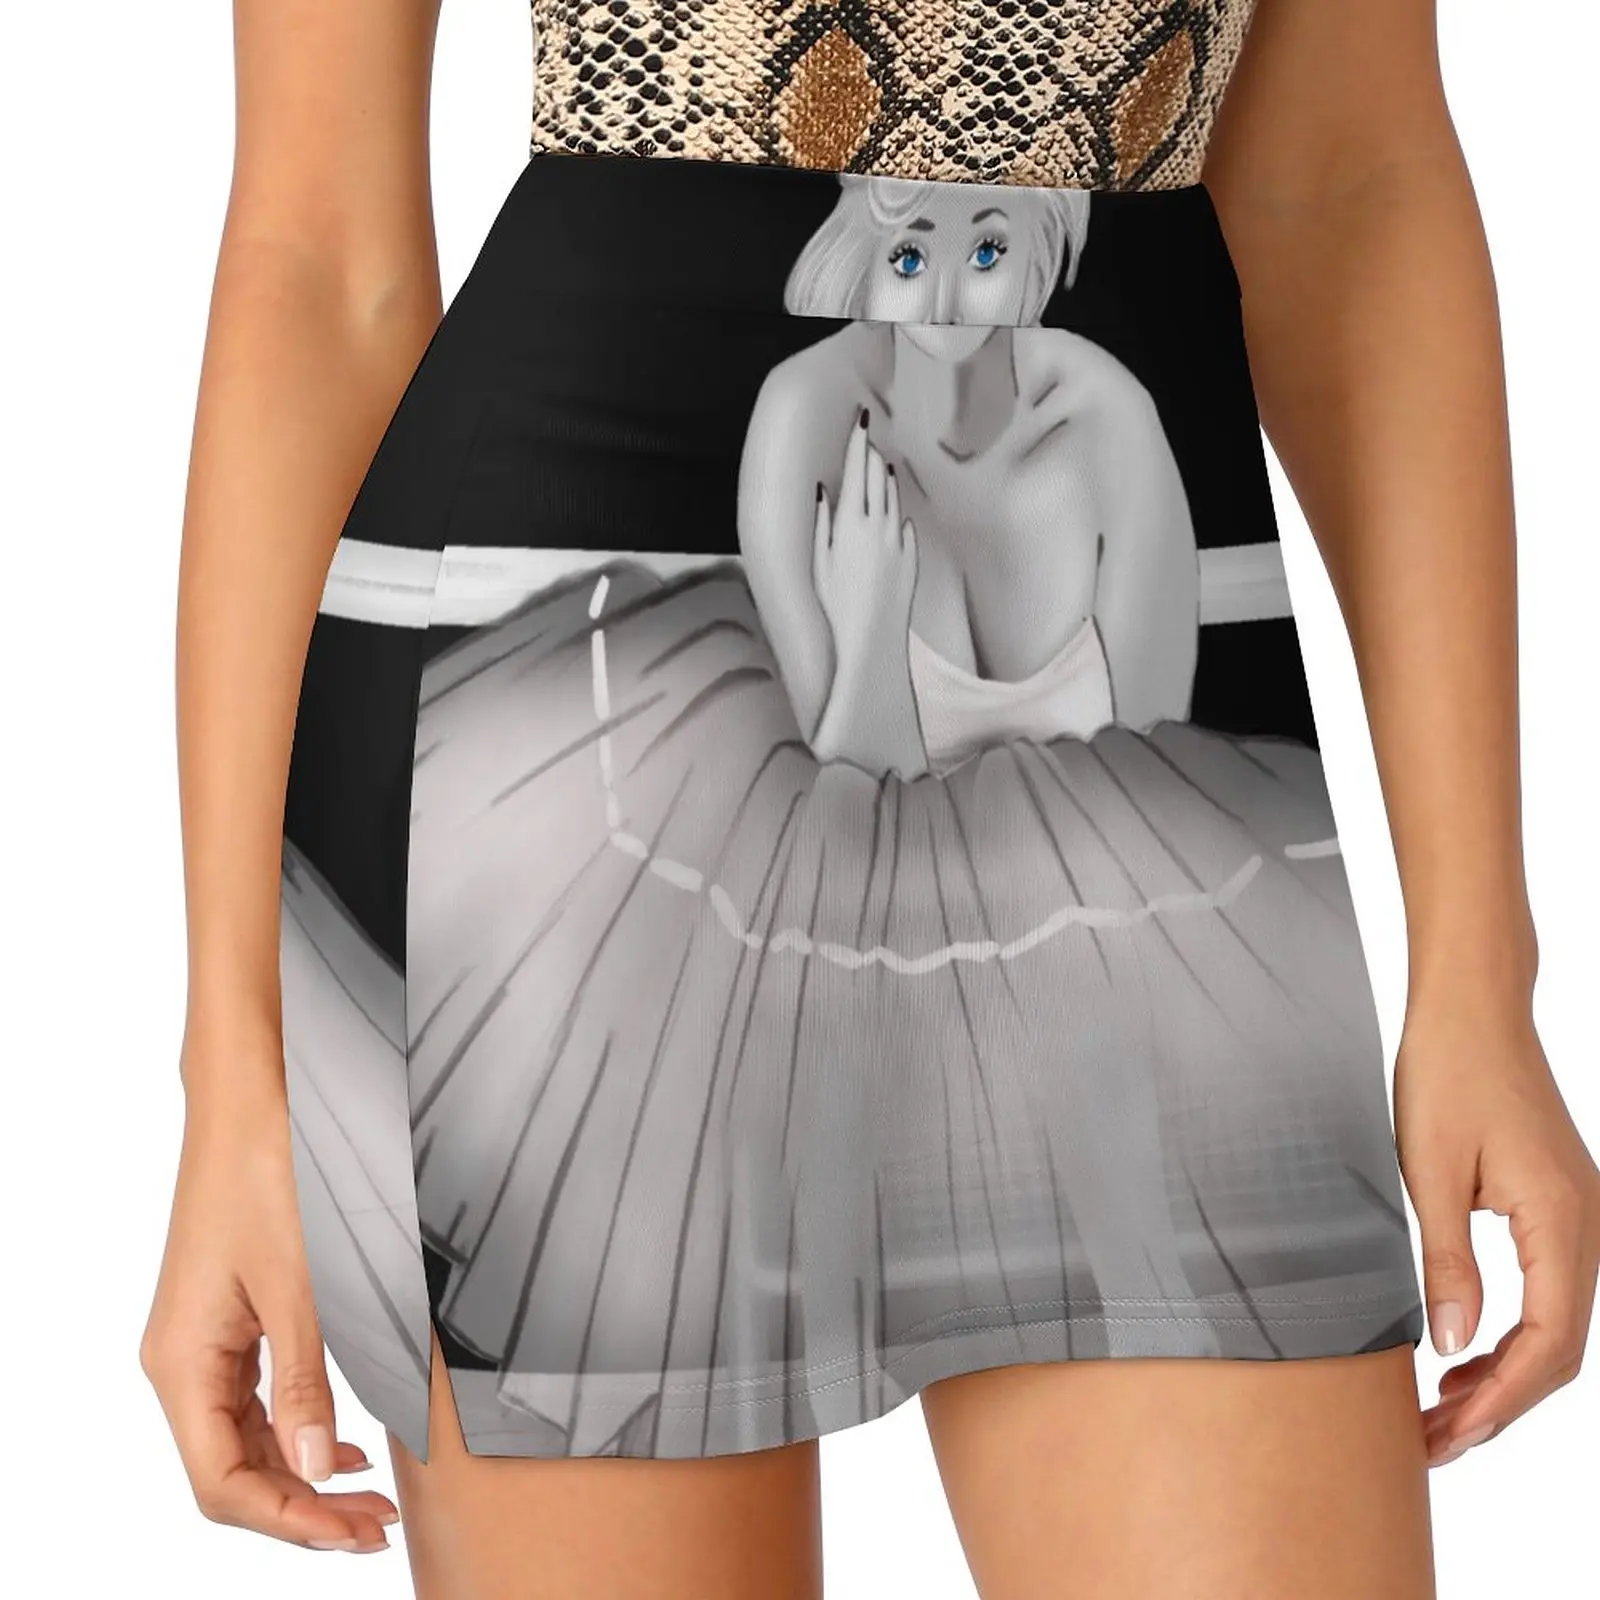 

Merylin Monroe Light proof trouser skirt new in external clothes dress